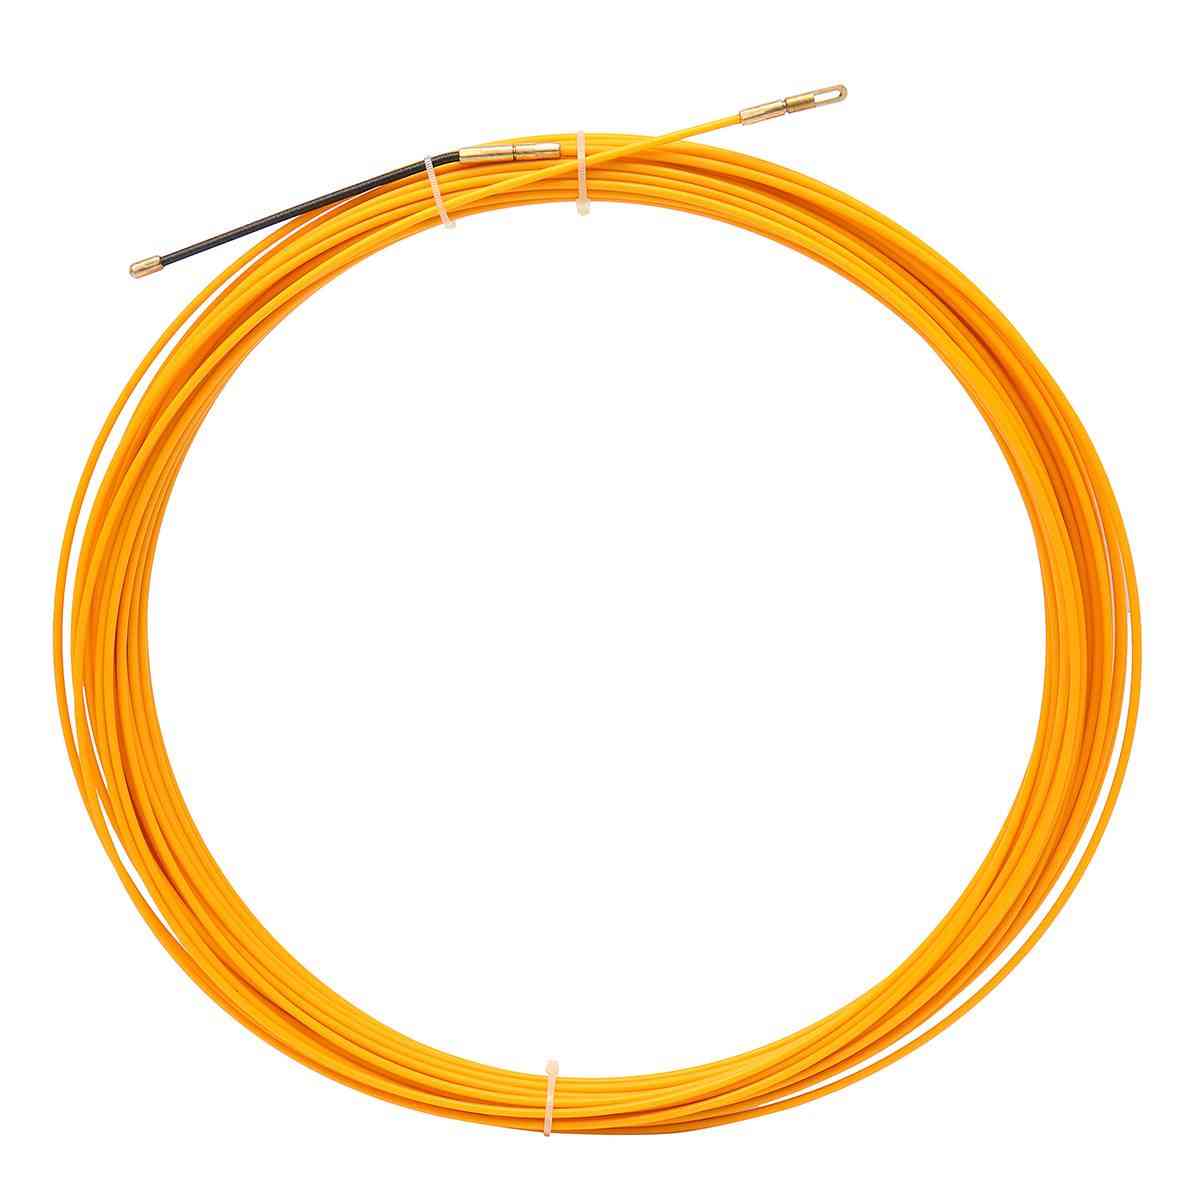 Extrator de cabo de fibra de vidro de 10m / 20m / 30m - 30m